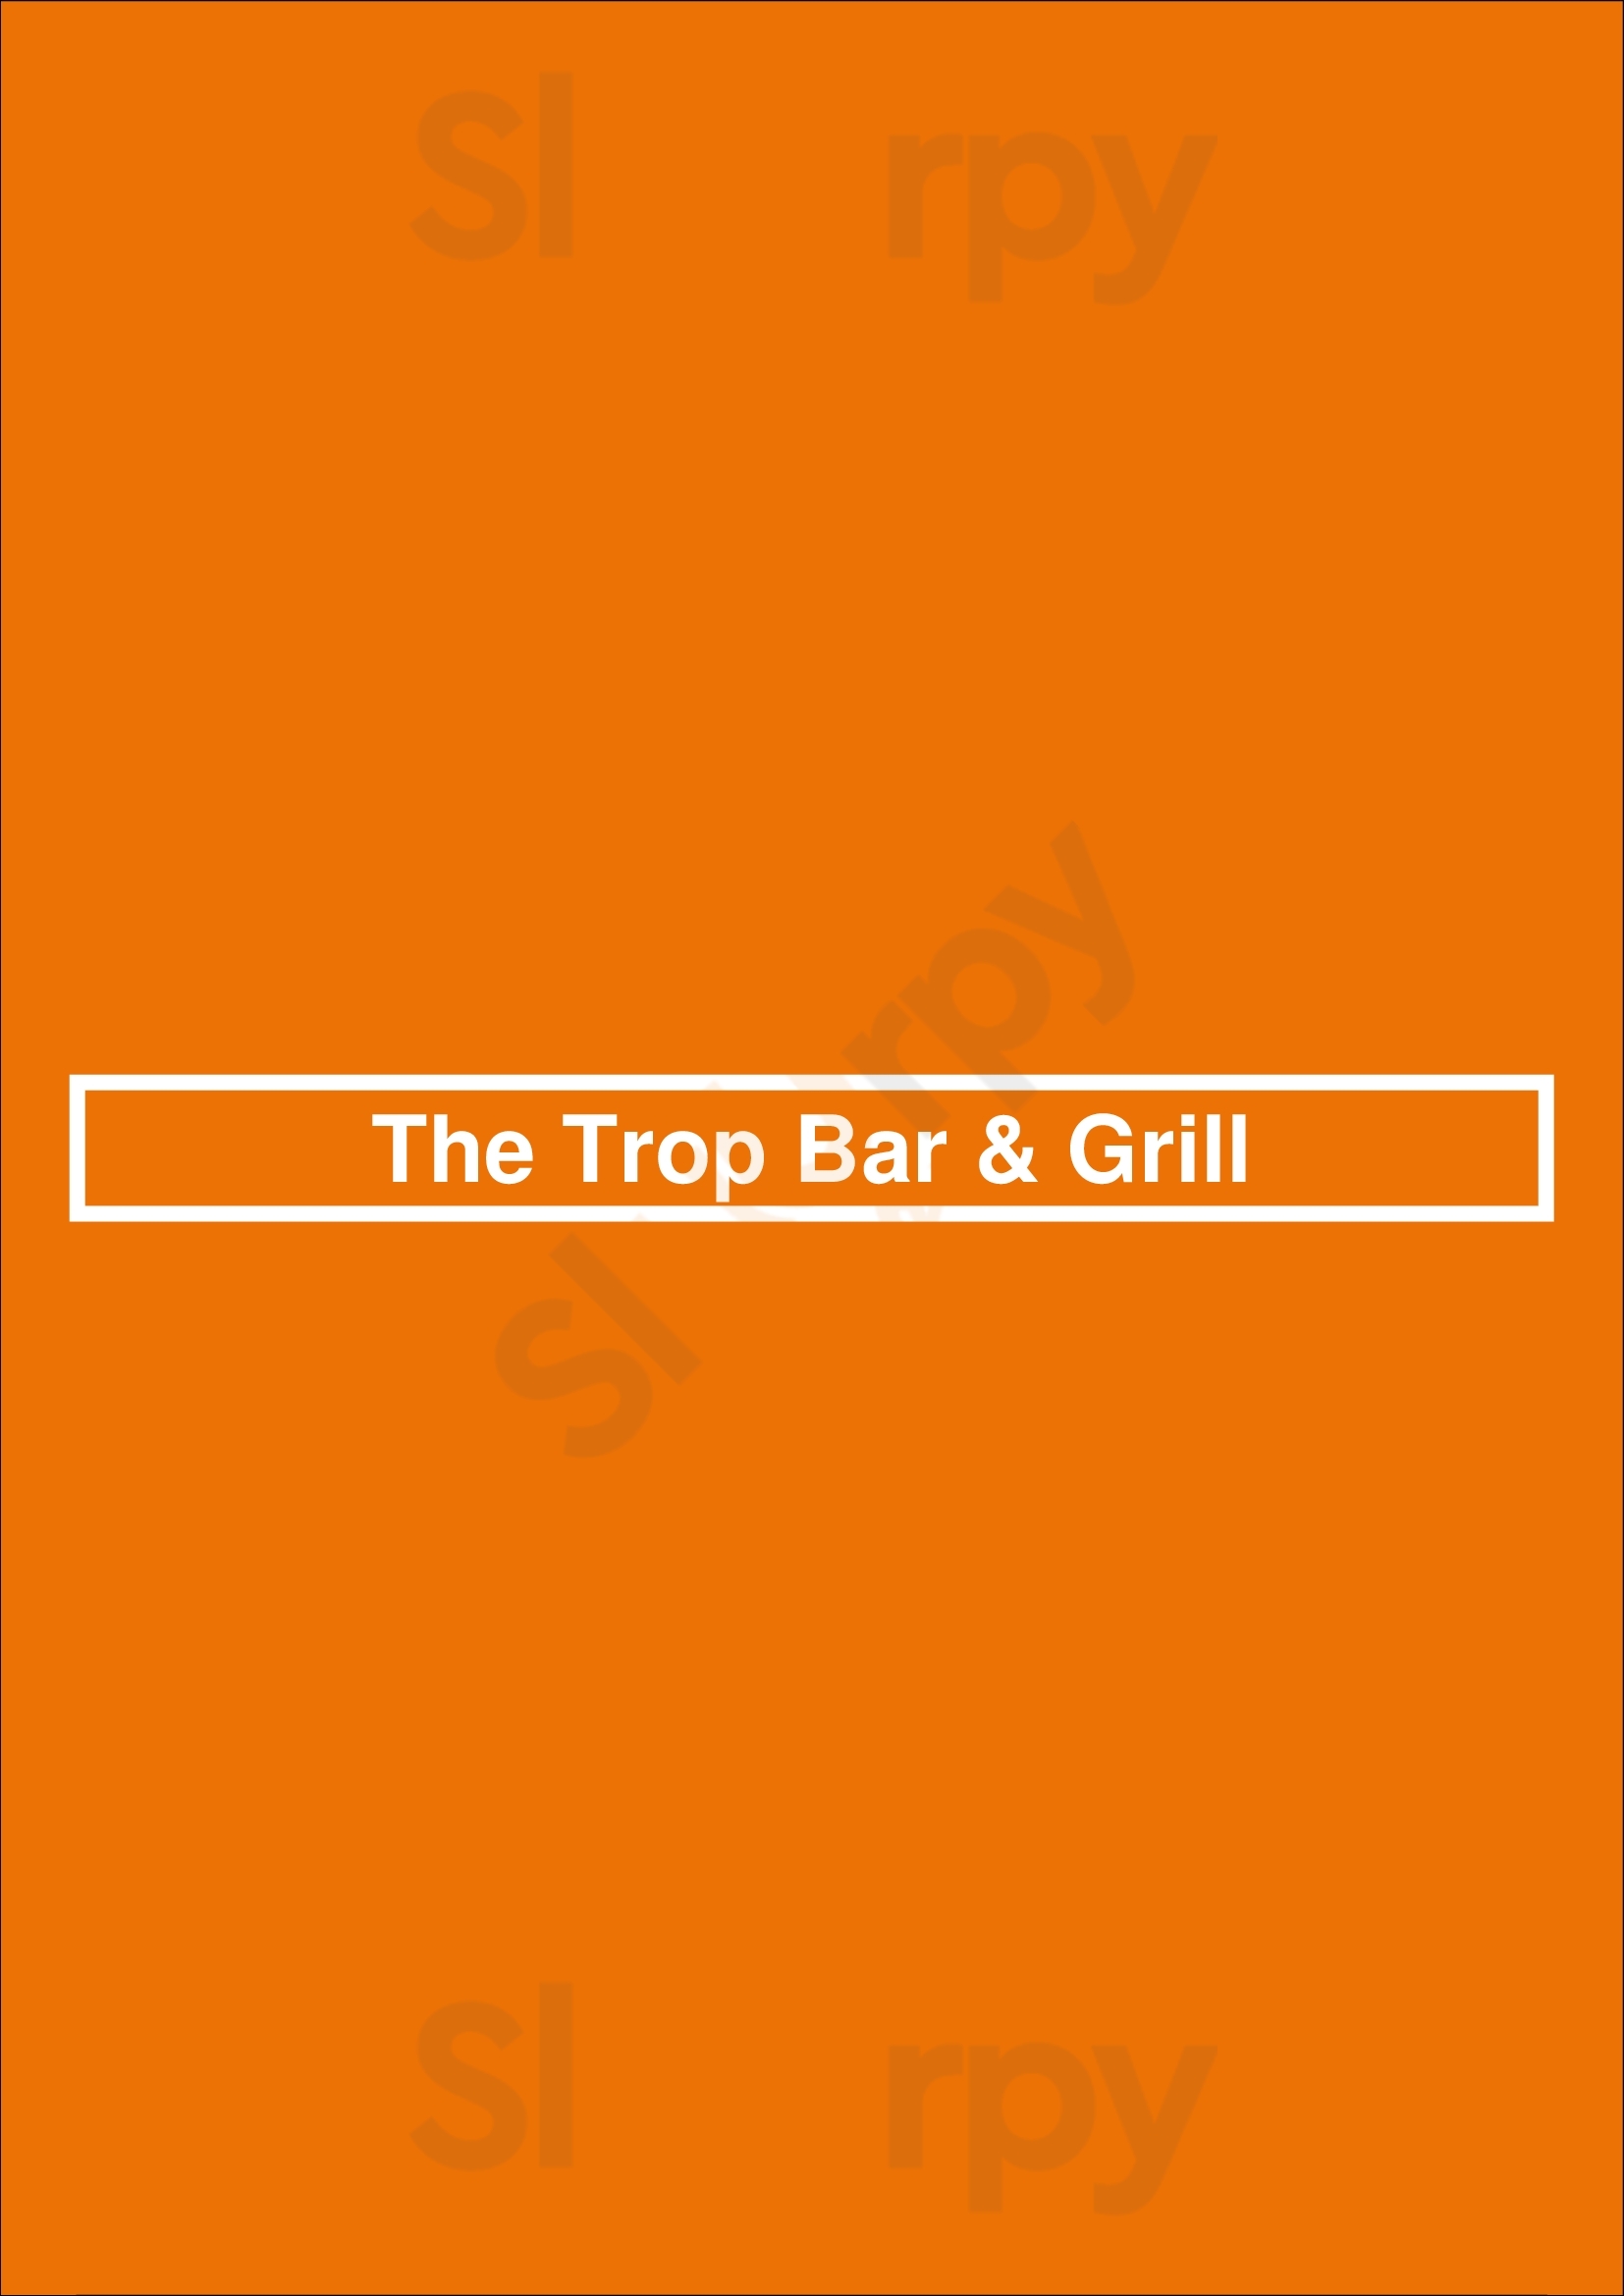 The Trop Bar & Grill Calgary Menu - 1